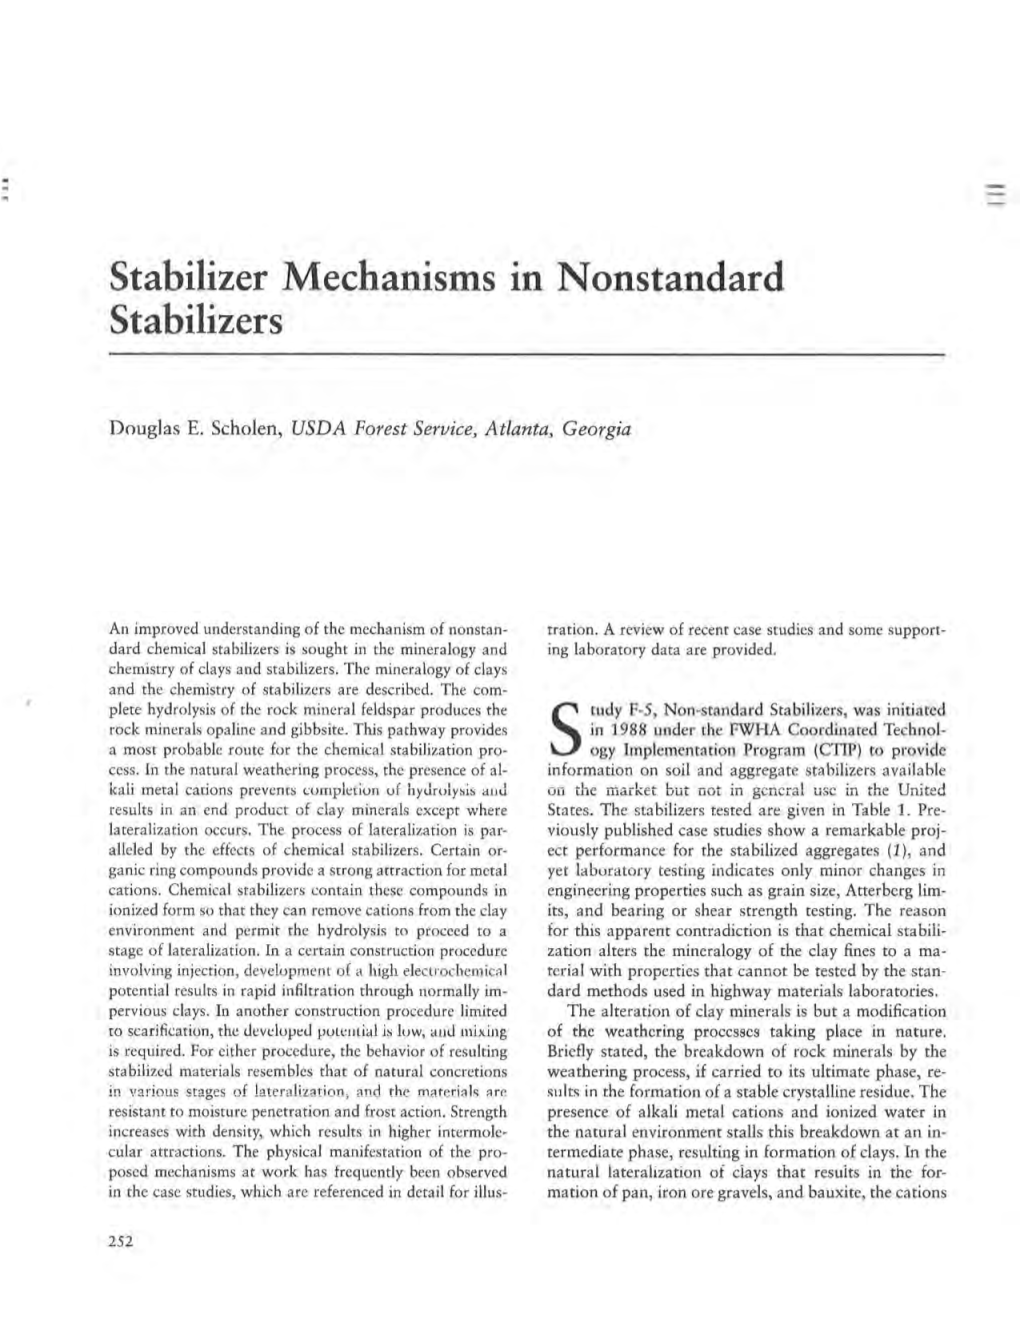 Stabilizer Mechanisms in Nonstandard Stabilizers